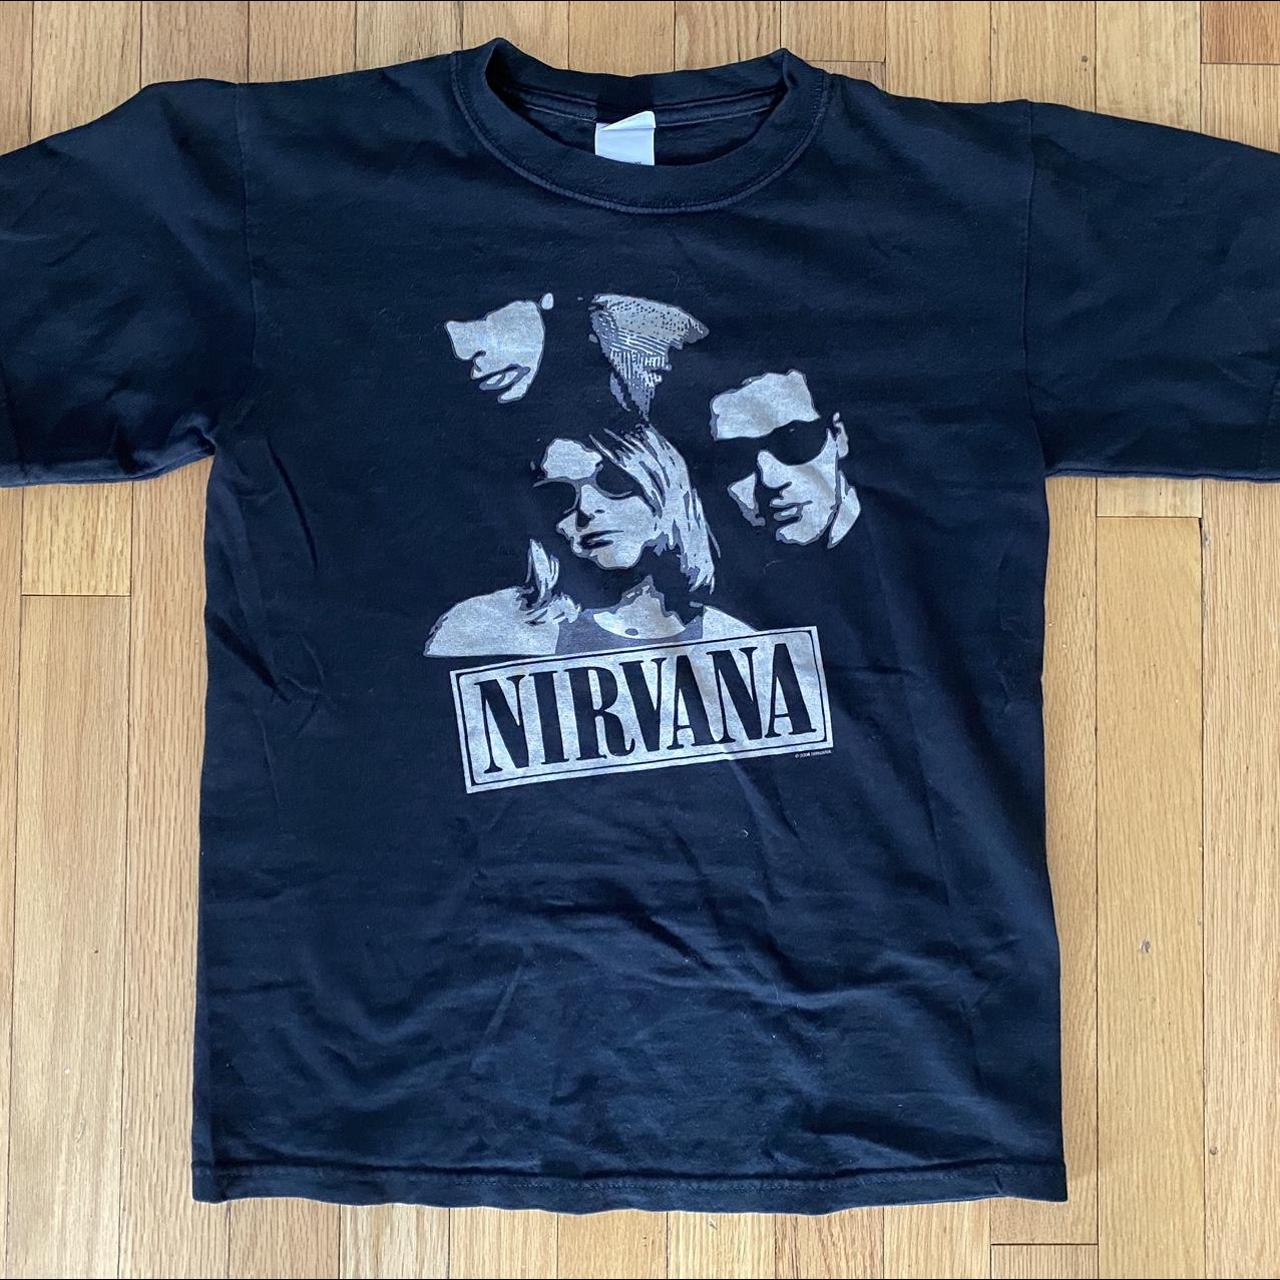 Vintage 00's NIRVANA T-shirt 2006 Kurt Cobain black... - Depop